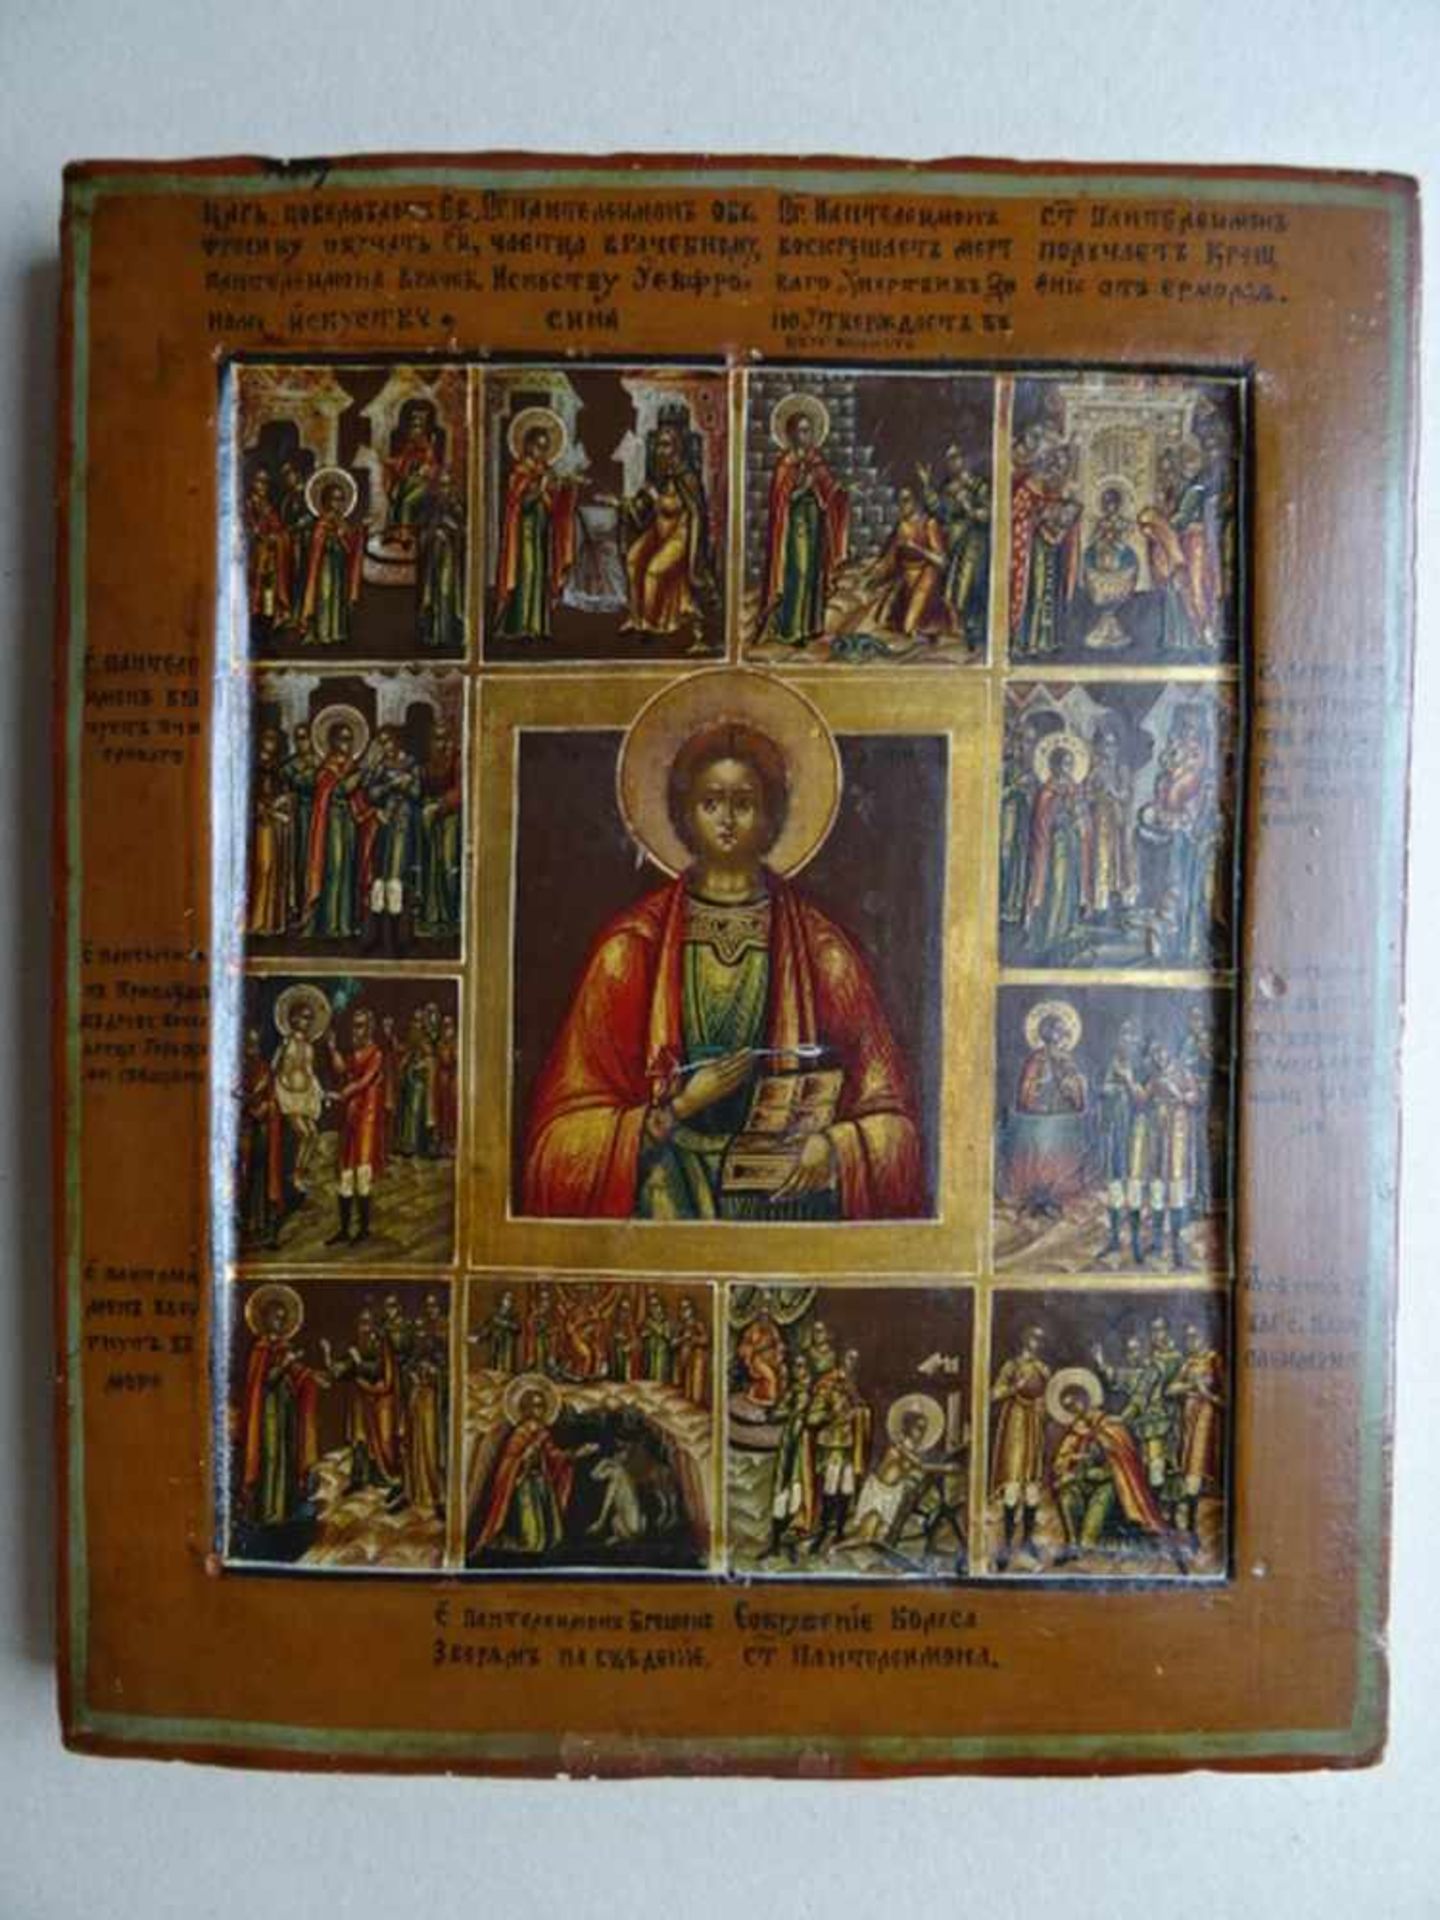 Ikonen.-Martyrium des heiligen Bartholomäus. Tempera und Gold auf Holz. Zentral-Russland, um 1850. - Image 2 of 4